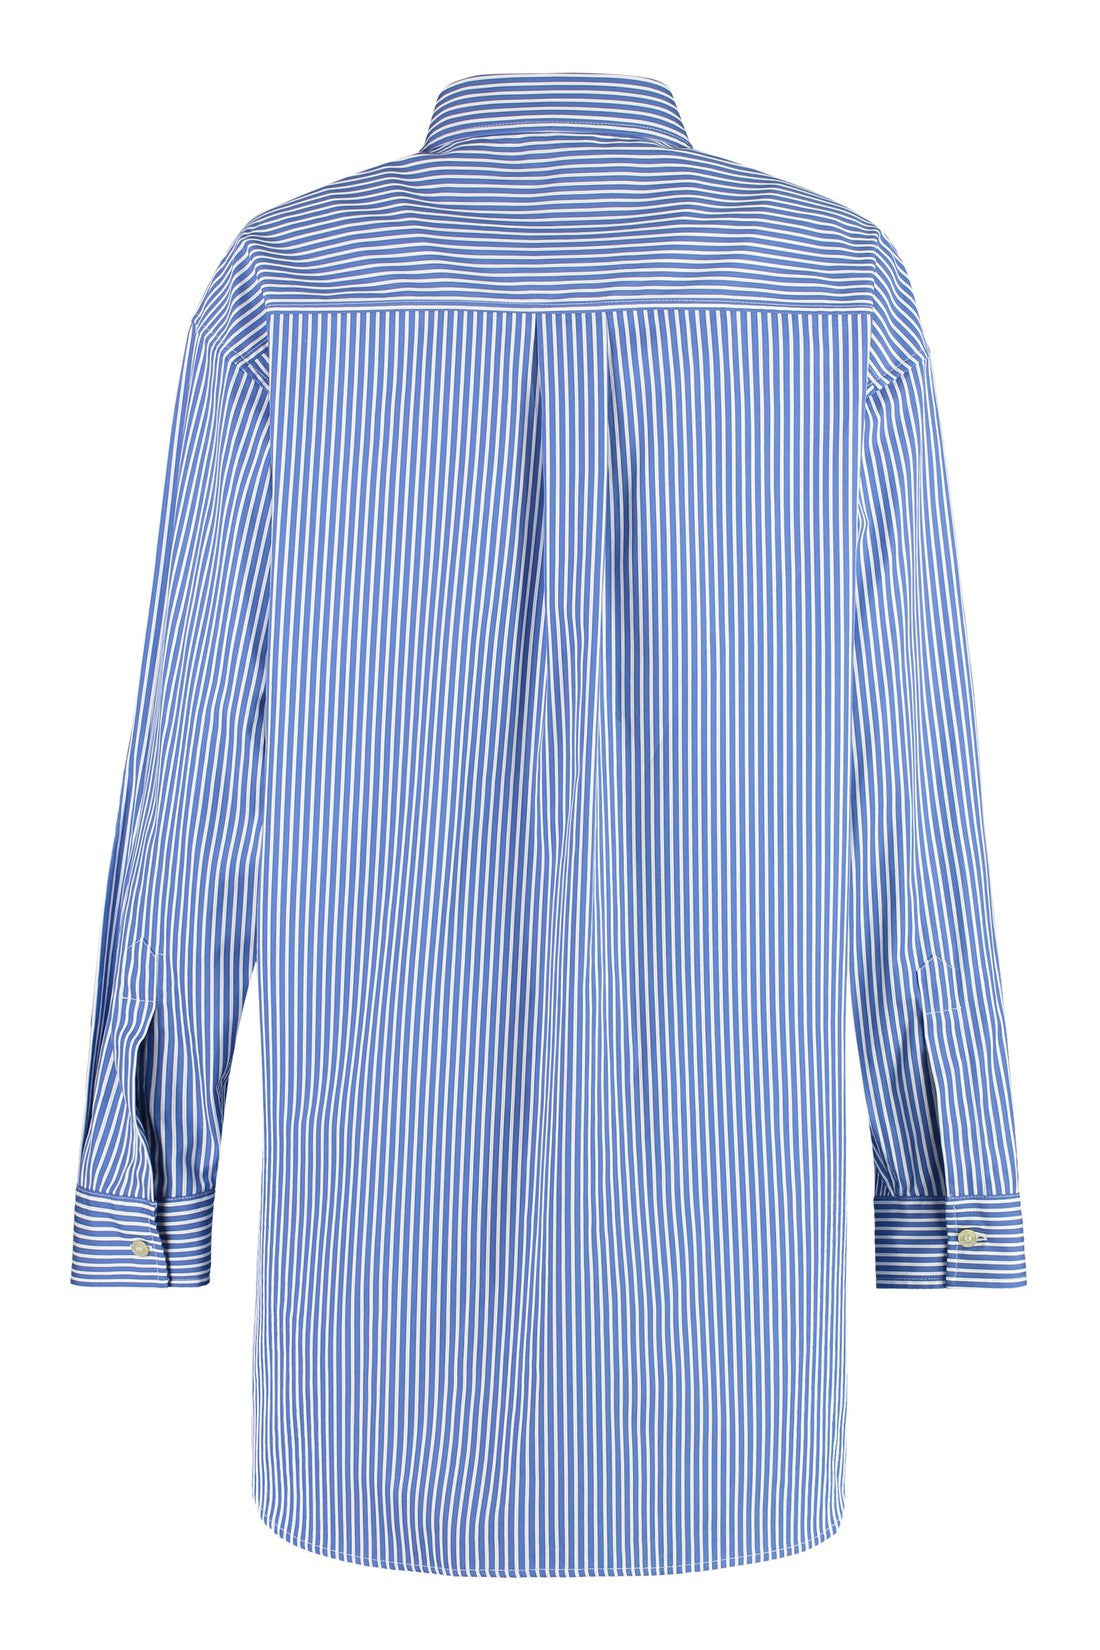 Etro-OUTLET-SALE-Striped cotton shirt-ARCHIVIST